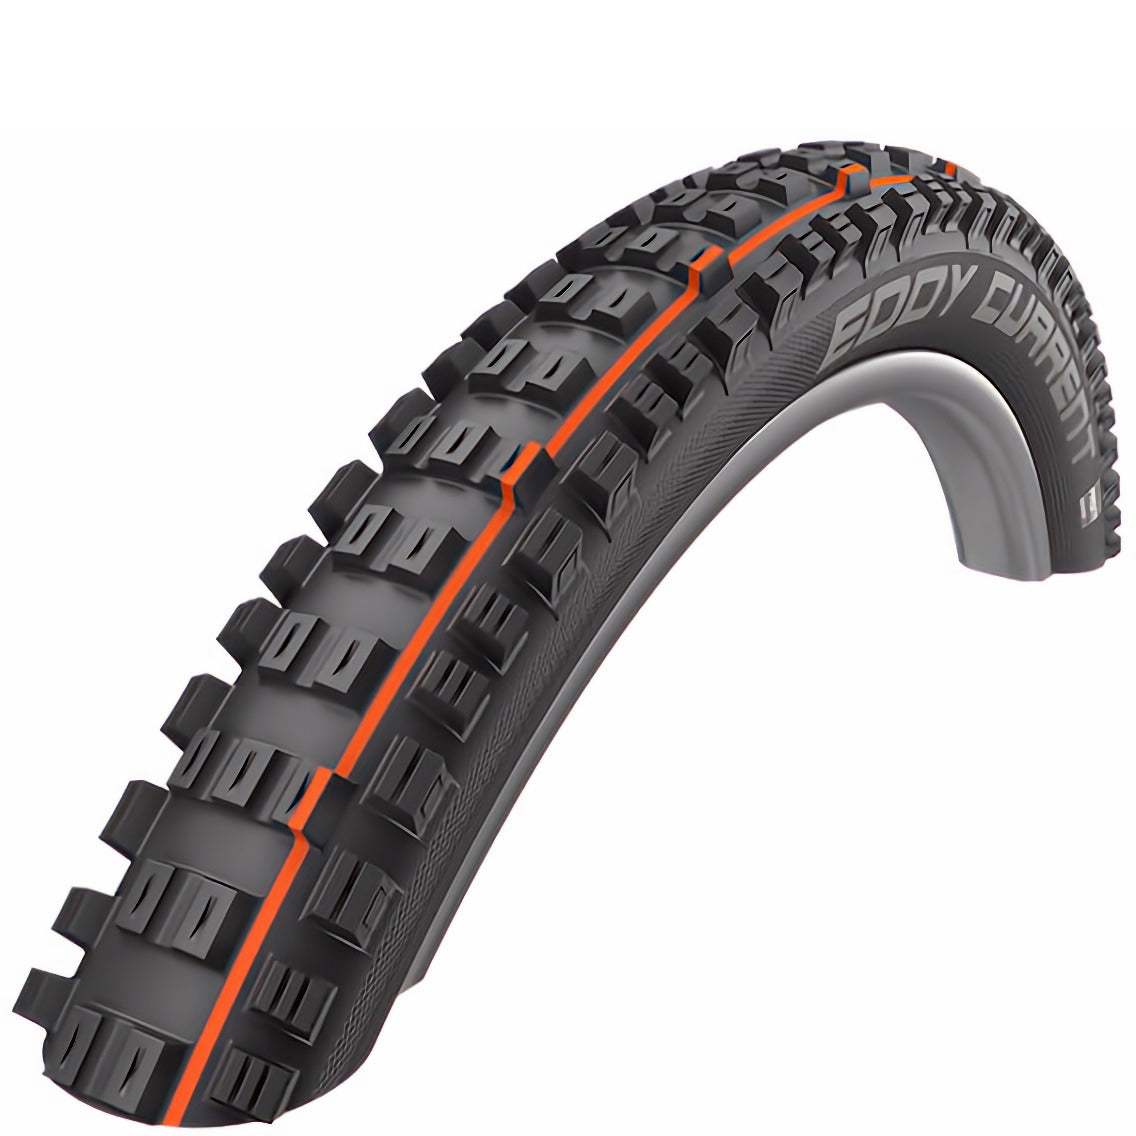 Schwalbe Eddy Current eBike Rear Tyre - Black - Orange - Rear - TLE Kevlar Folding - Super Gravity - E-50 - Addix Soft - EVO - 2.6 Inch - 27.5 Inch